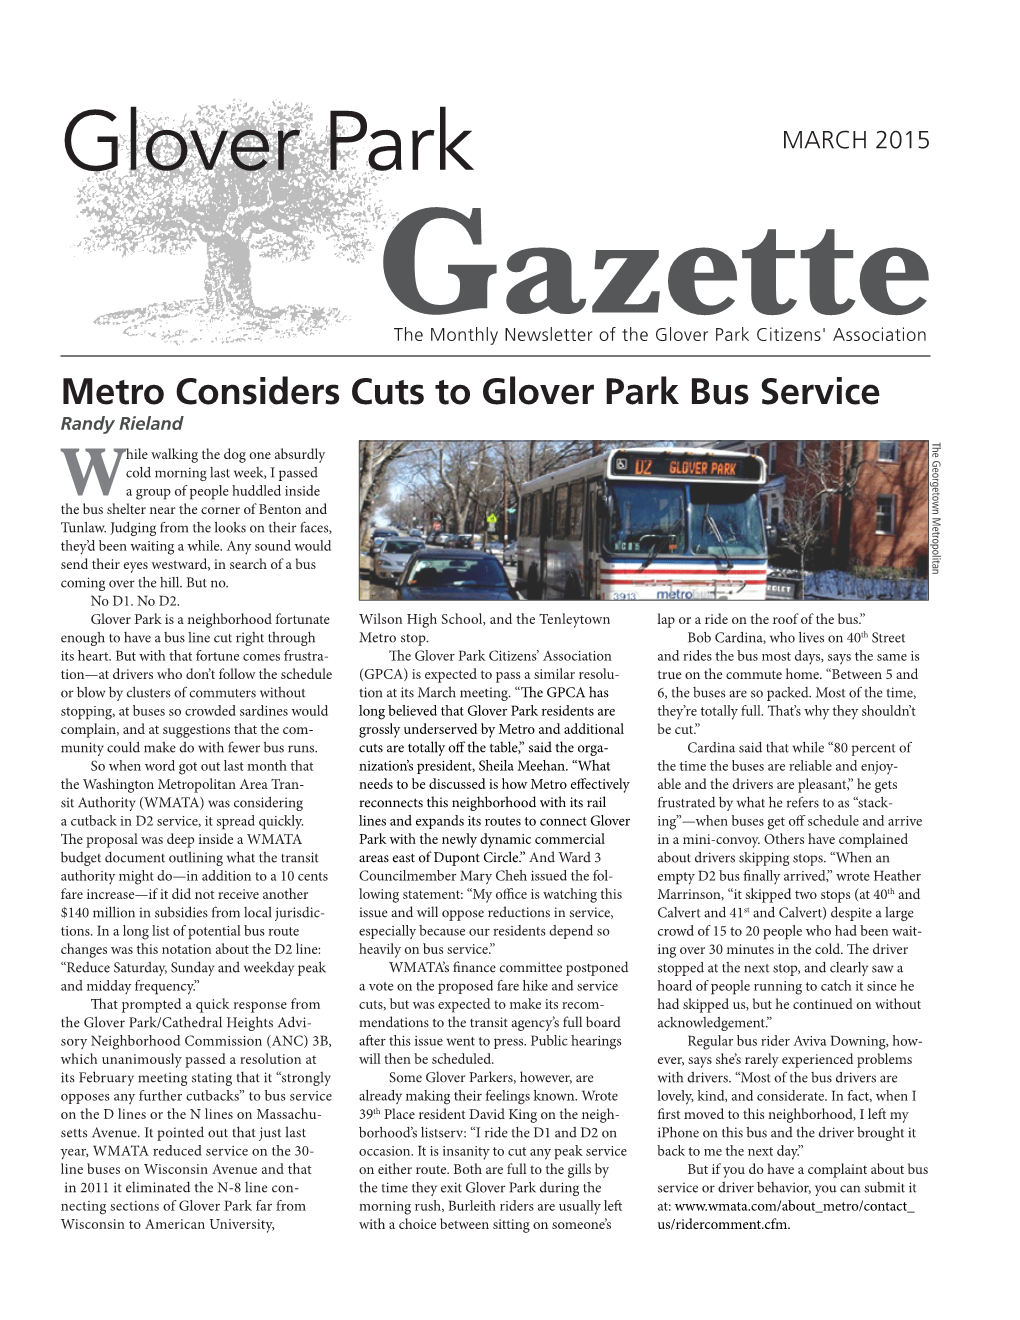 Glover Park Gazette March